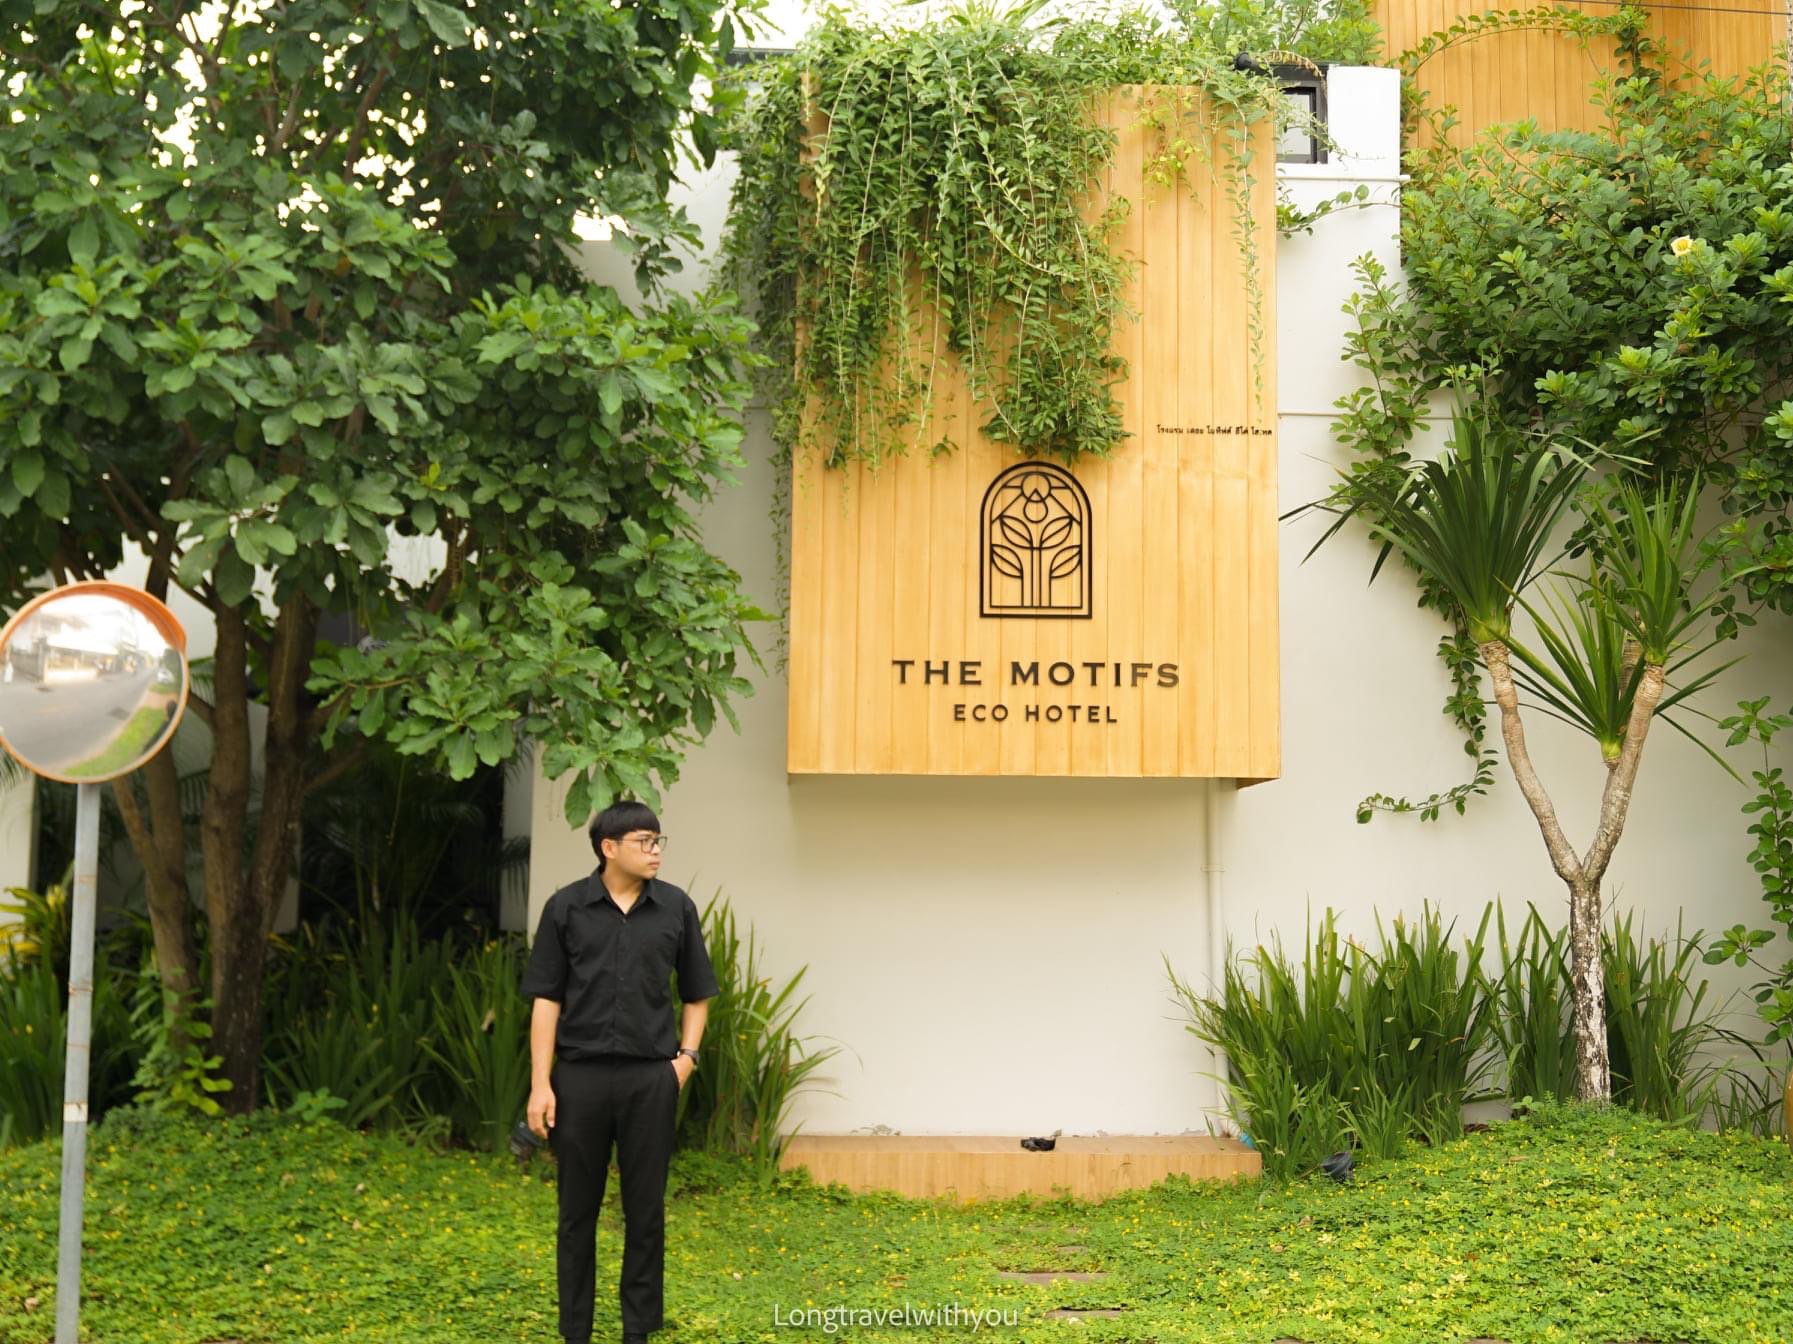 参观 Chan City The Motifs Eco Hotel 爱世界的风格。今天和她一起旅行,